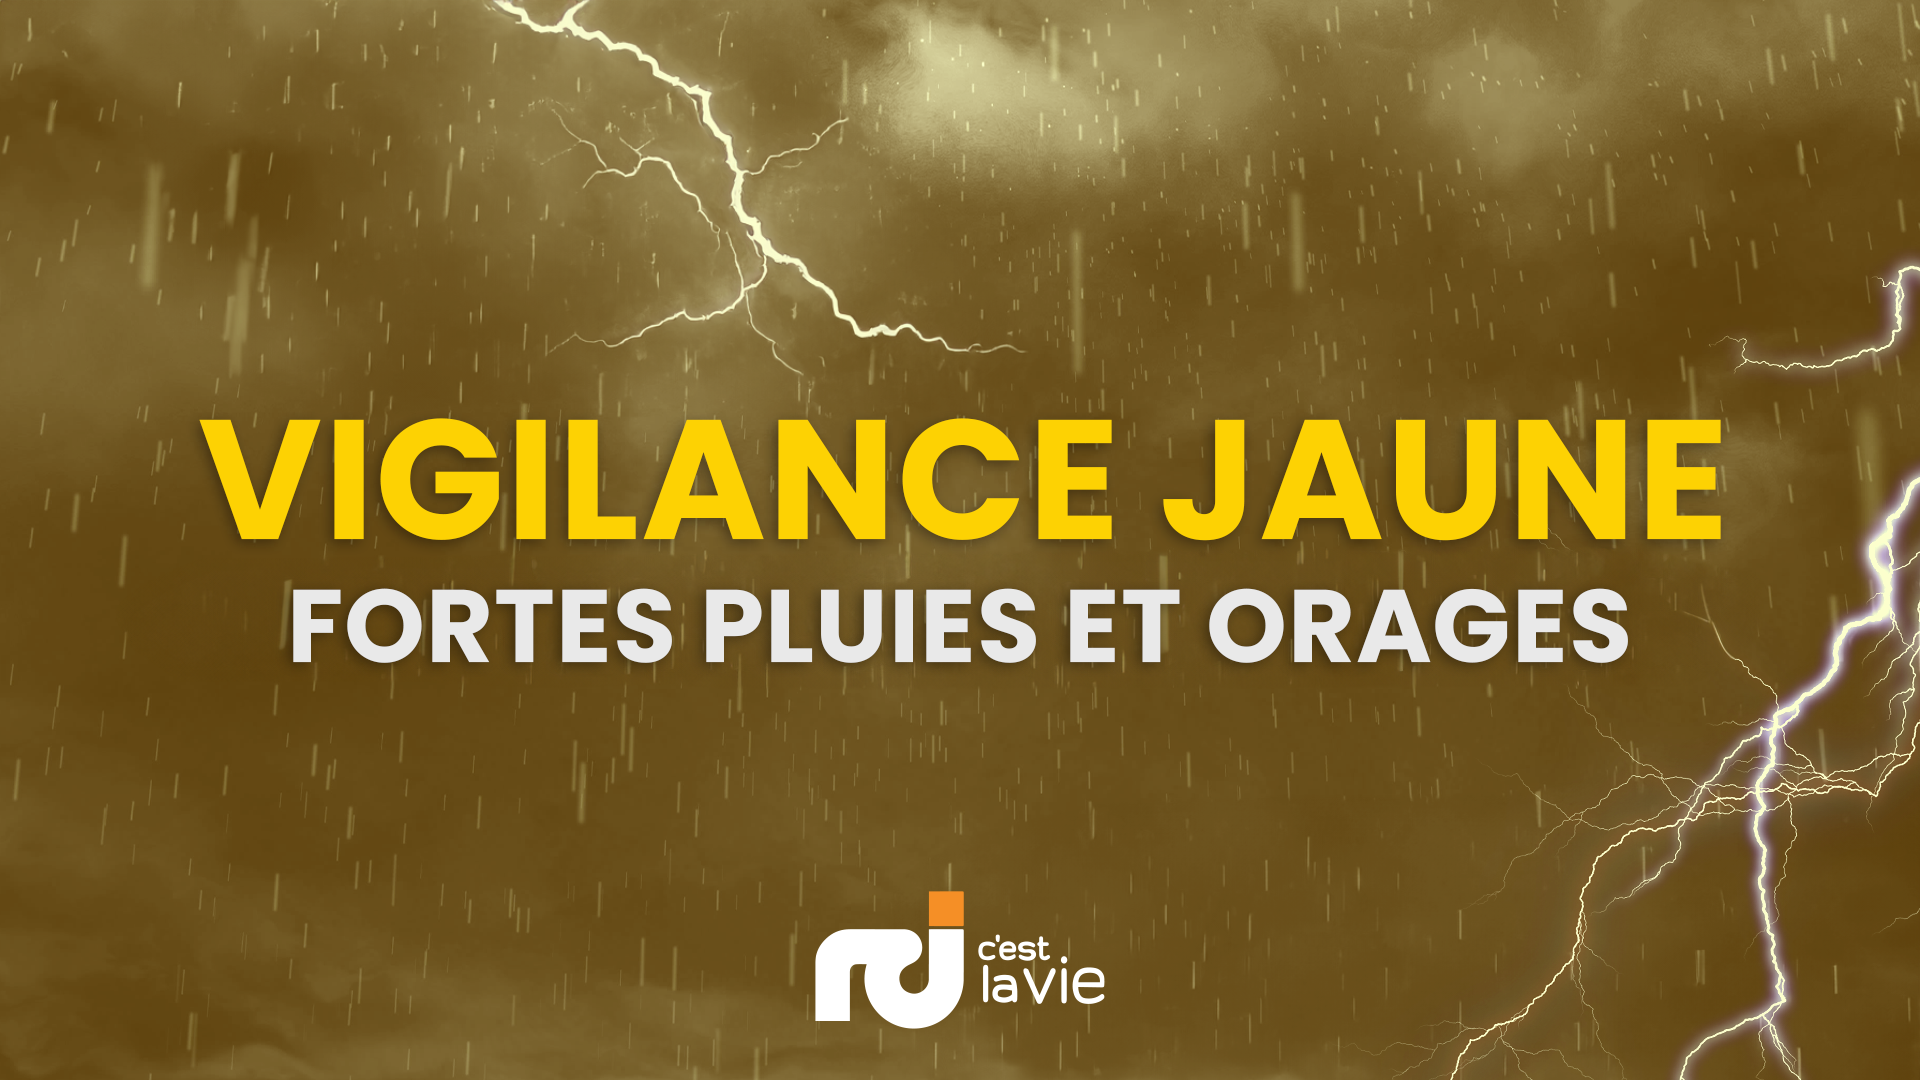      « Fortes pluies » et montée des eaux : la Guadeloupe toujours en vigilance Jaune

